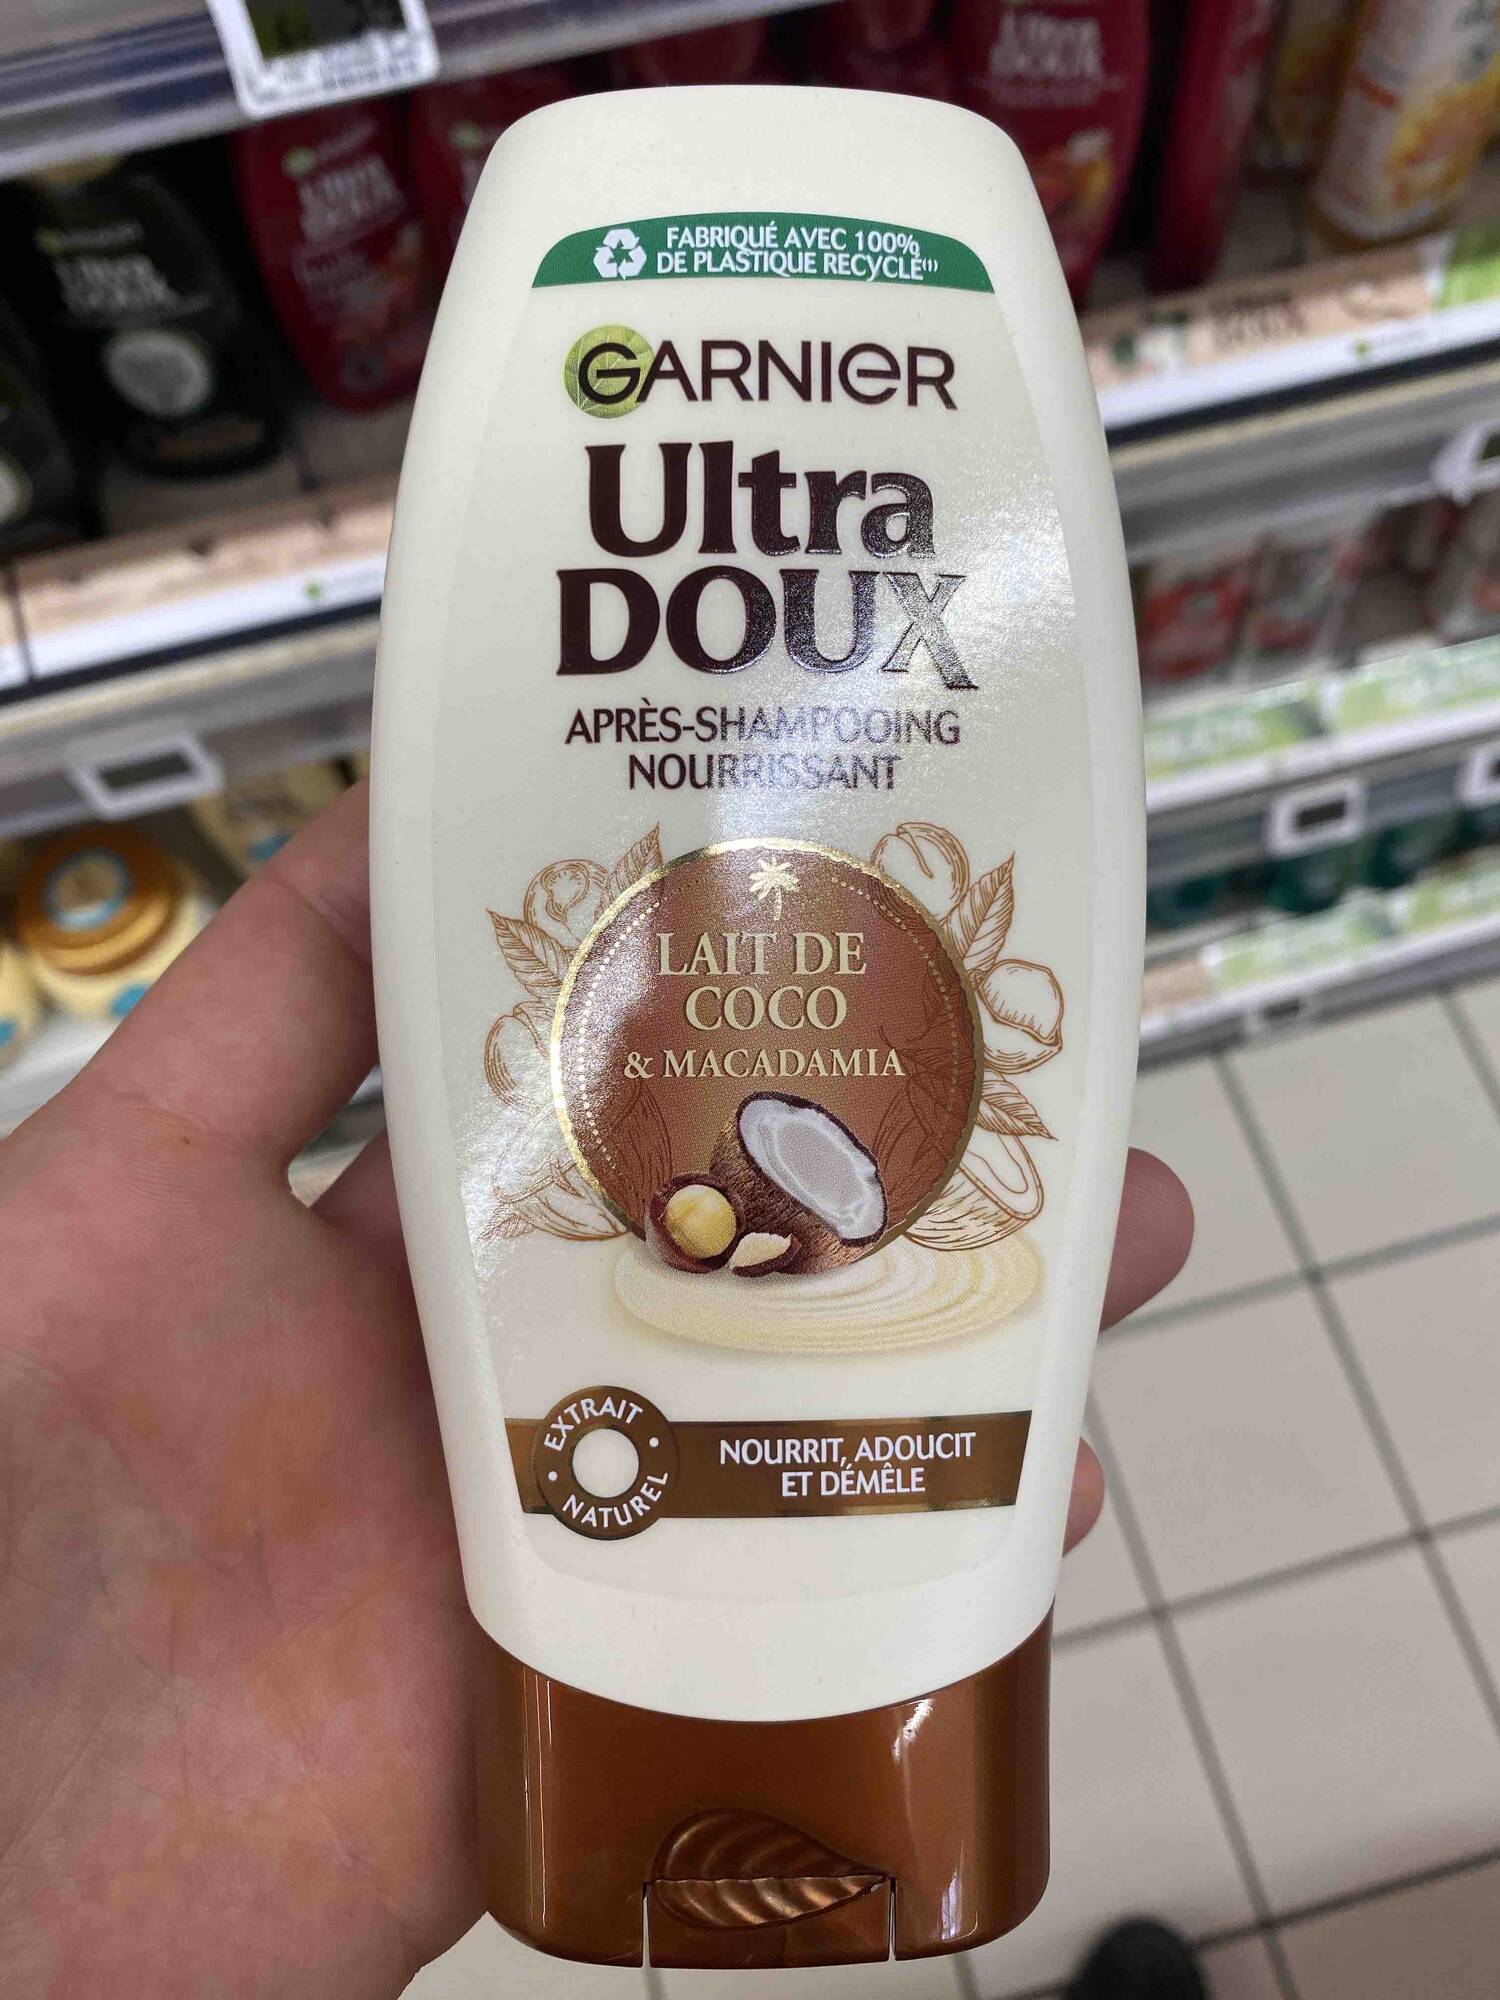 GARNIER - Ultra Doux Lait de Coco & Macadamia - Après-shampooing nourrissant 